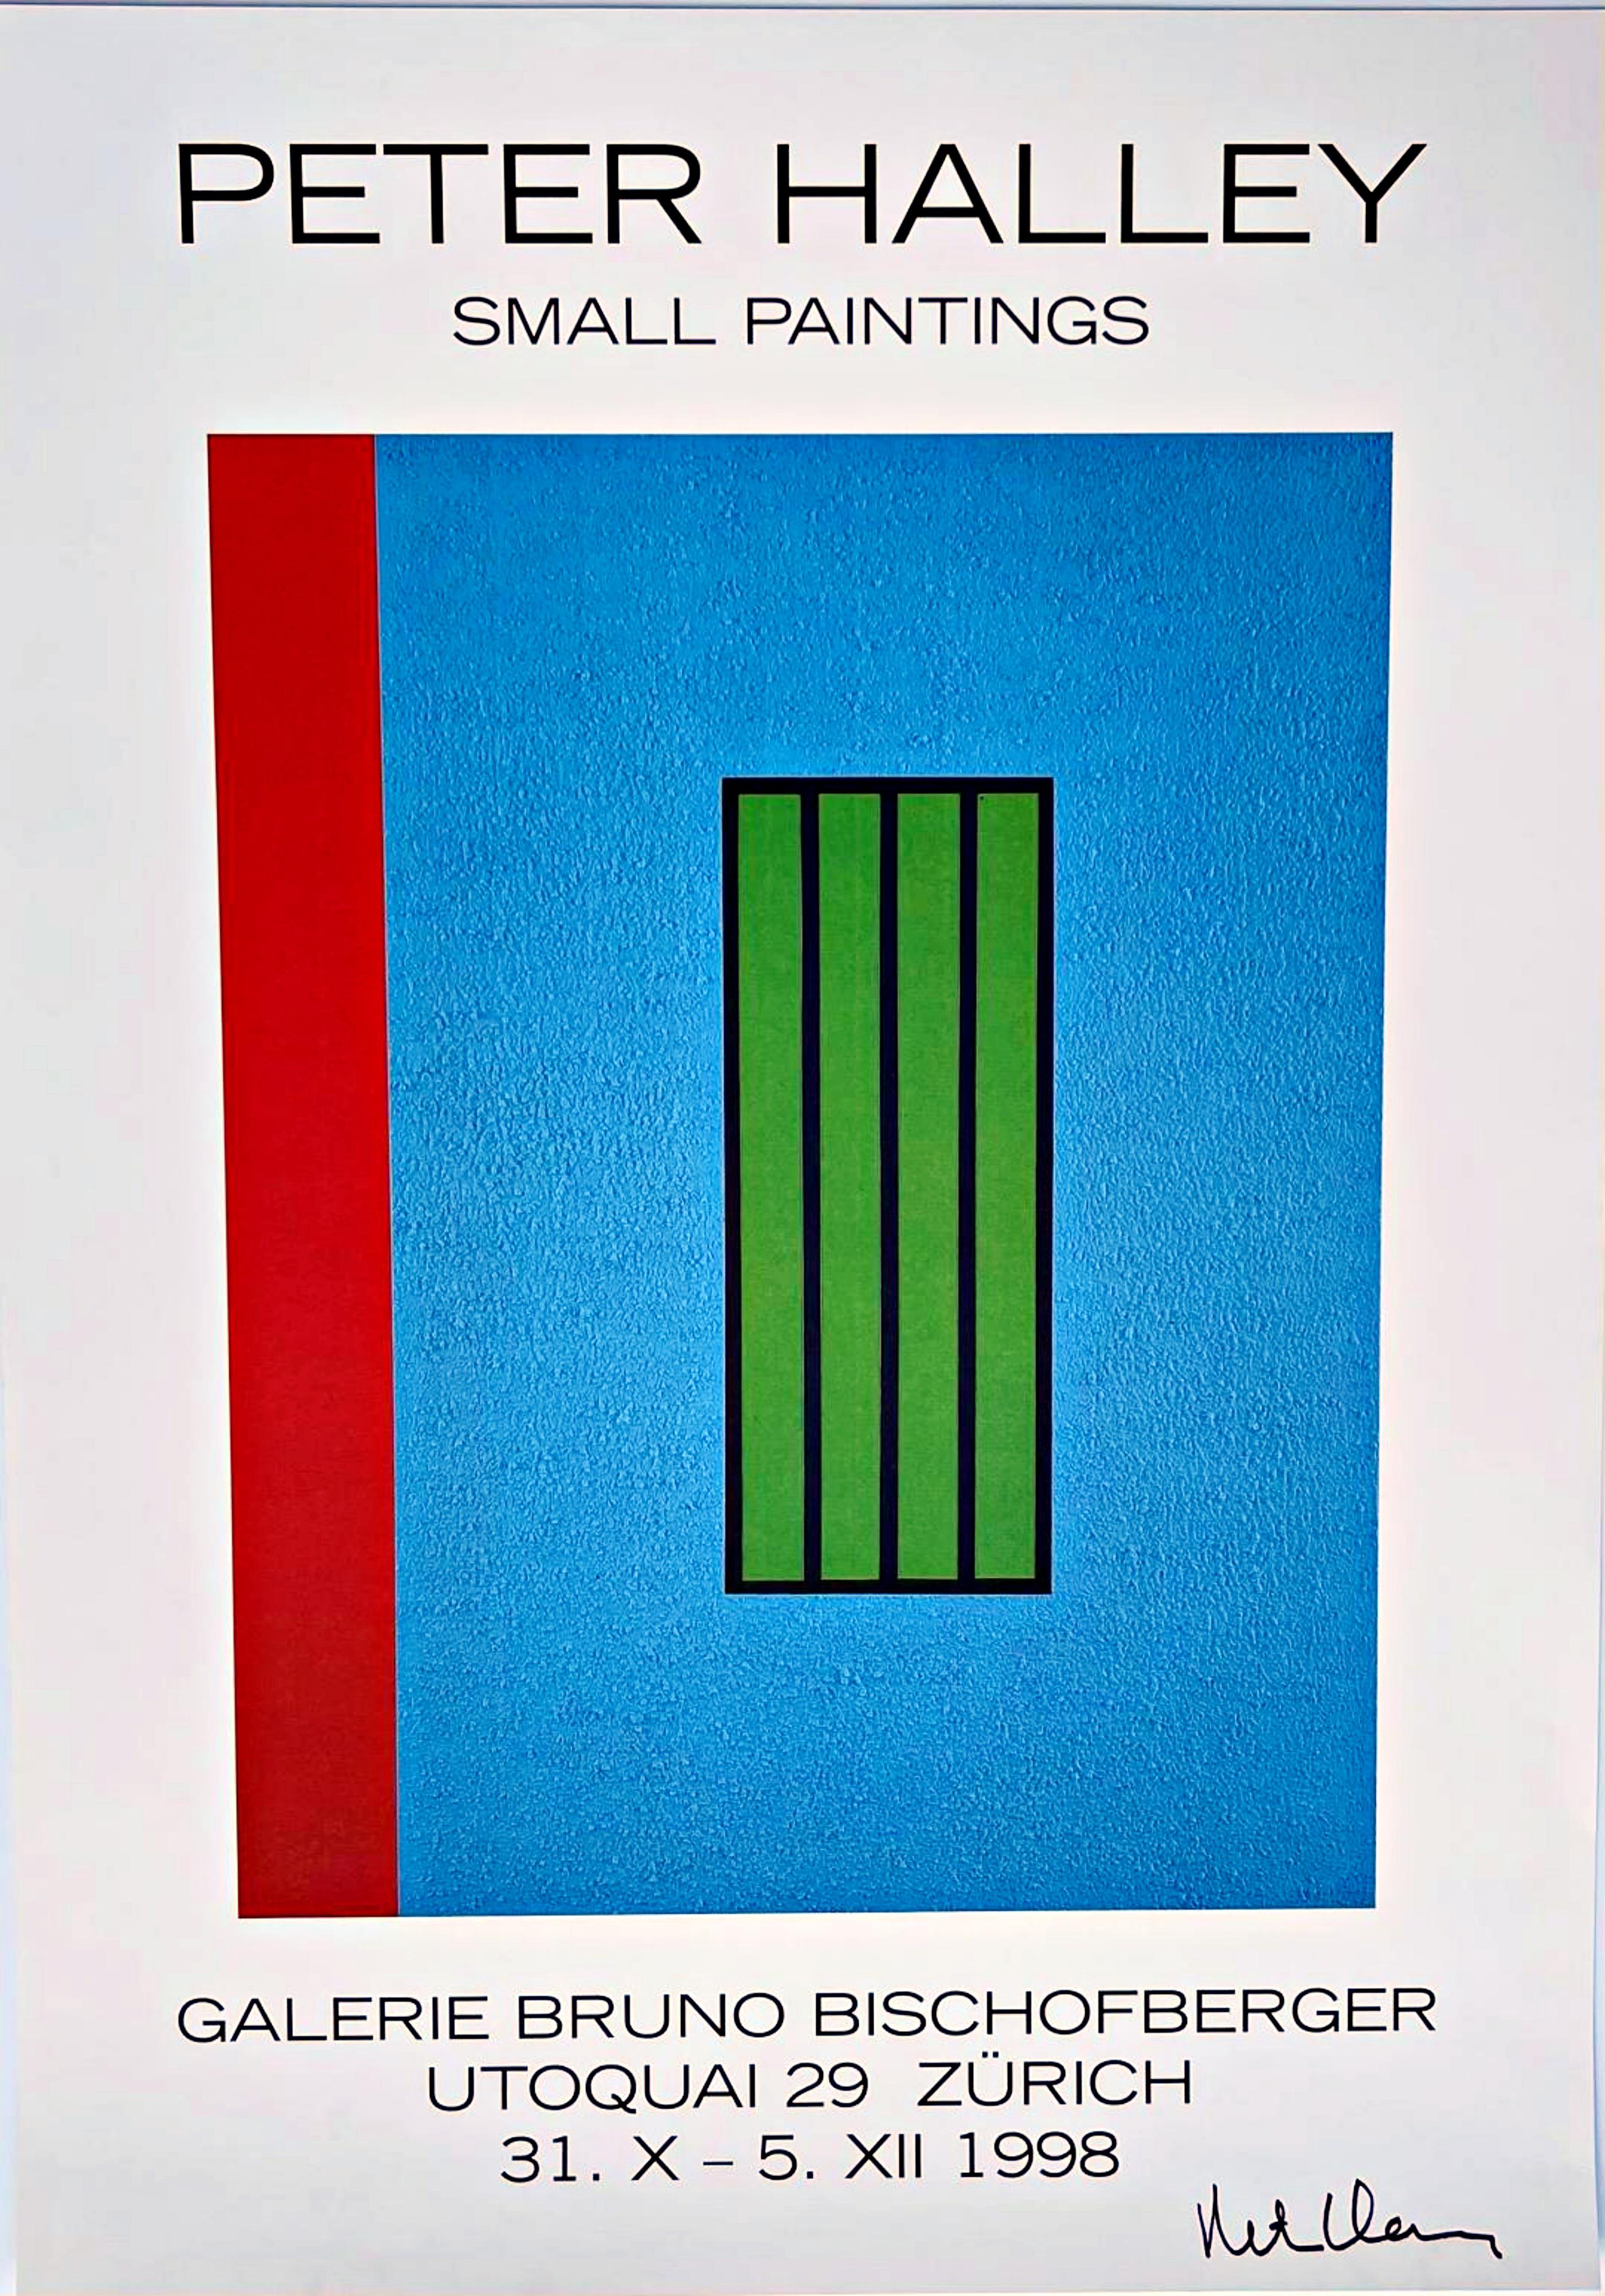 La Alpha 137 Gallery a l'honneur de proposer cette lithographie offset historique de l'exposition de petites peintures du légendaire artiste américain Peter Halley à la Galerie Bruno Bischofberger à Zurich, en Suisse, en 1998, que l'artiste a signée